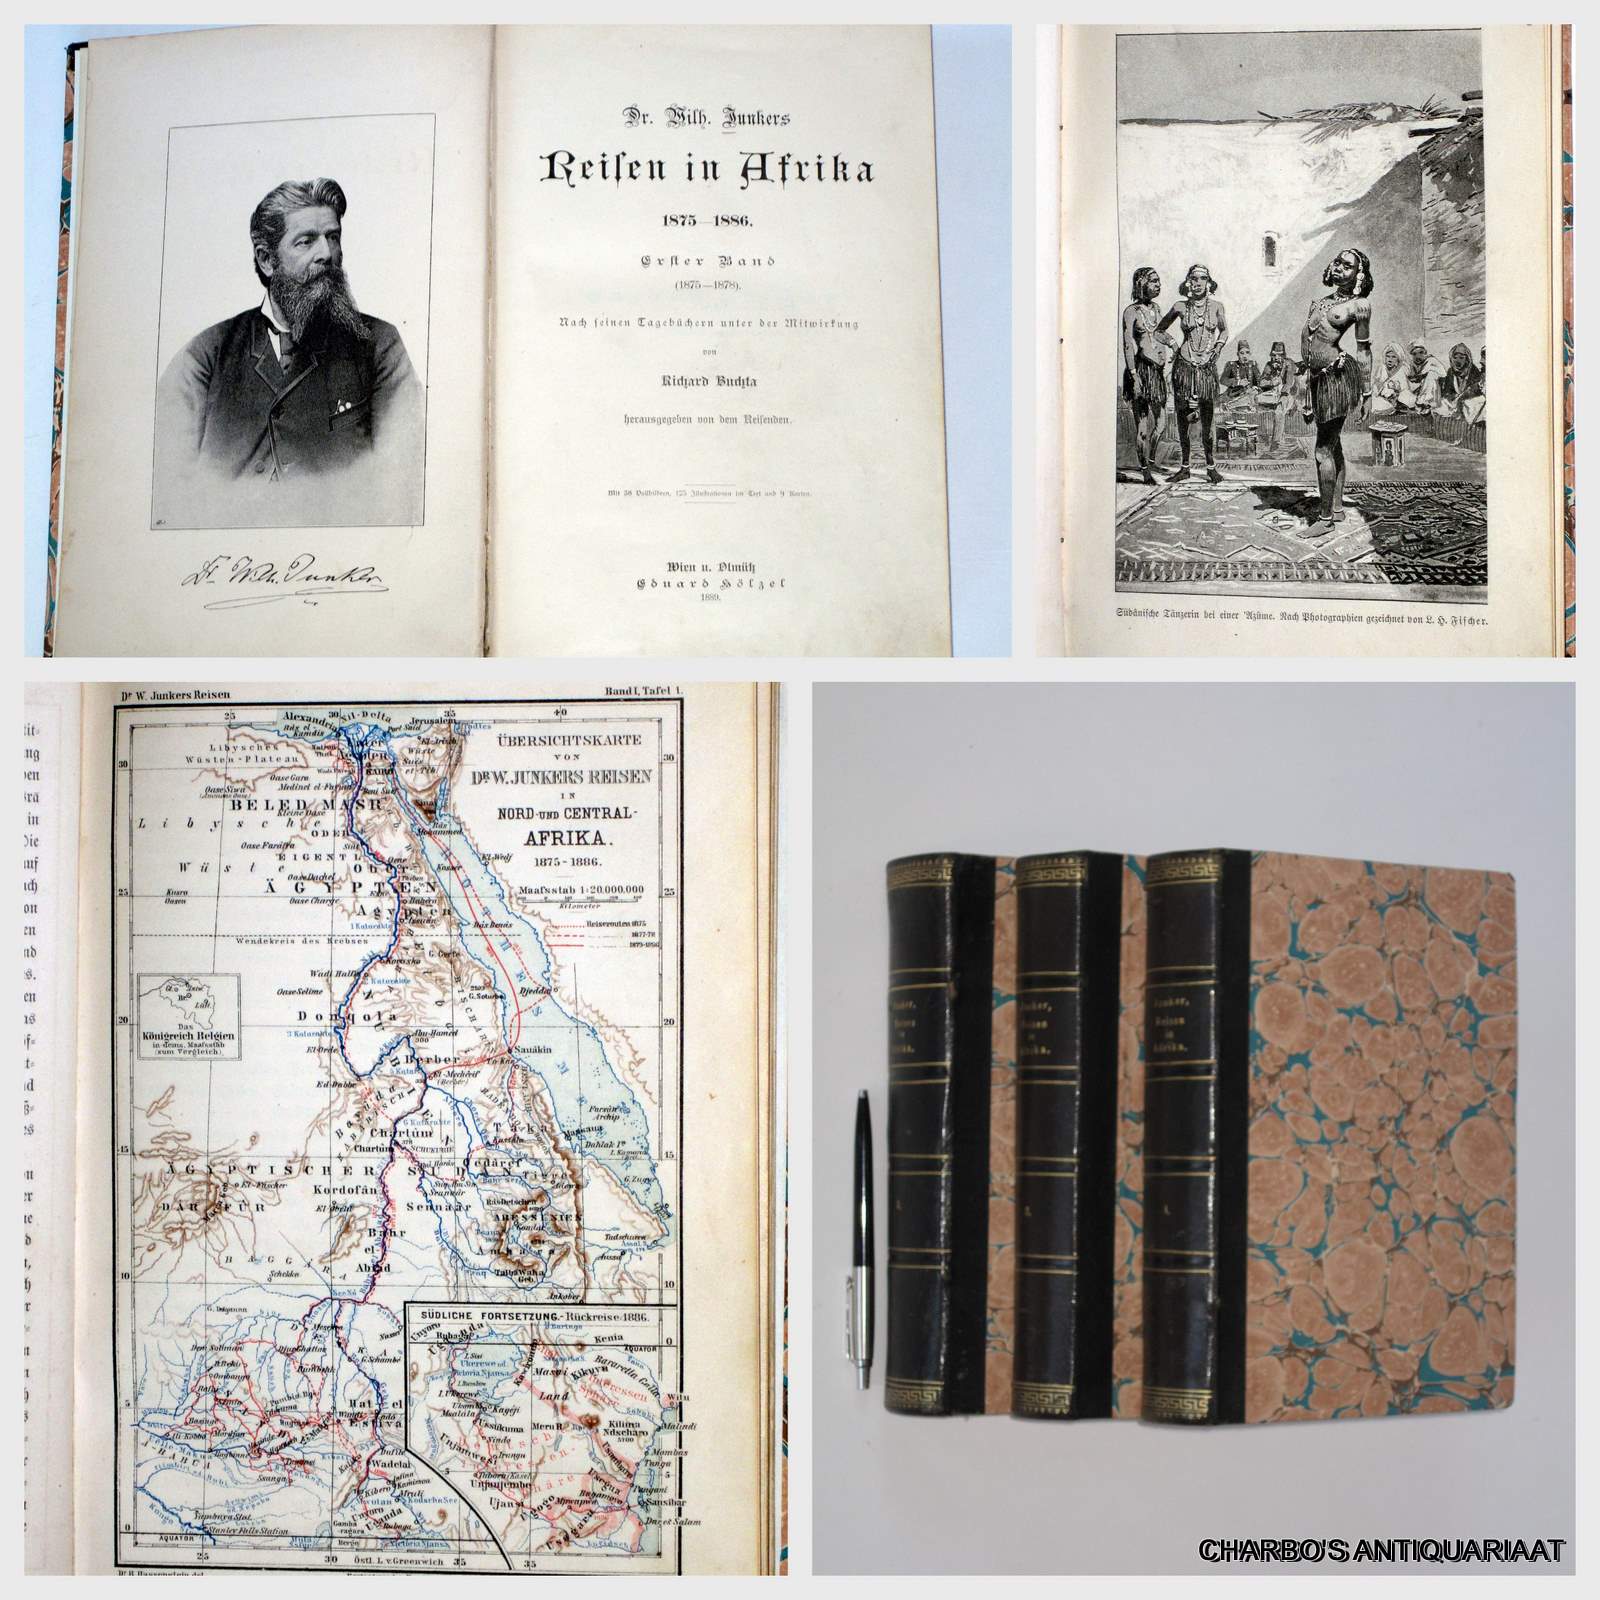 JUNKERS, WILHELM, -  Reisen in Afrika 1875-1886. Nach seinen Tagebchern unter Mitwirkung von R. Buchta. (3 vol. set).